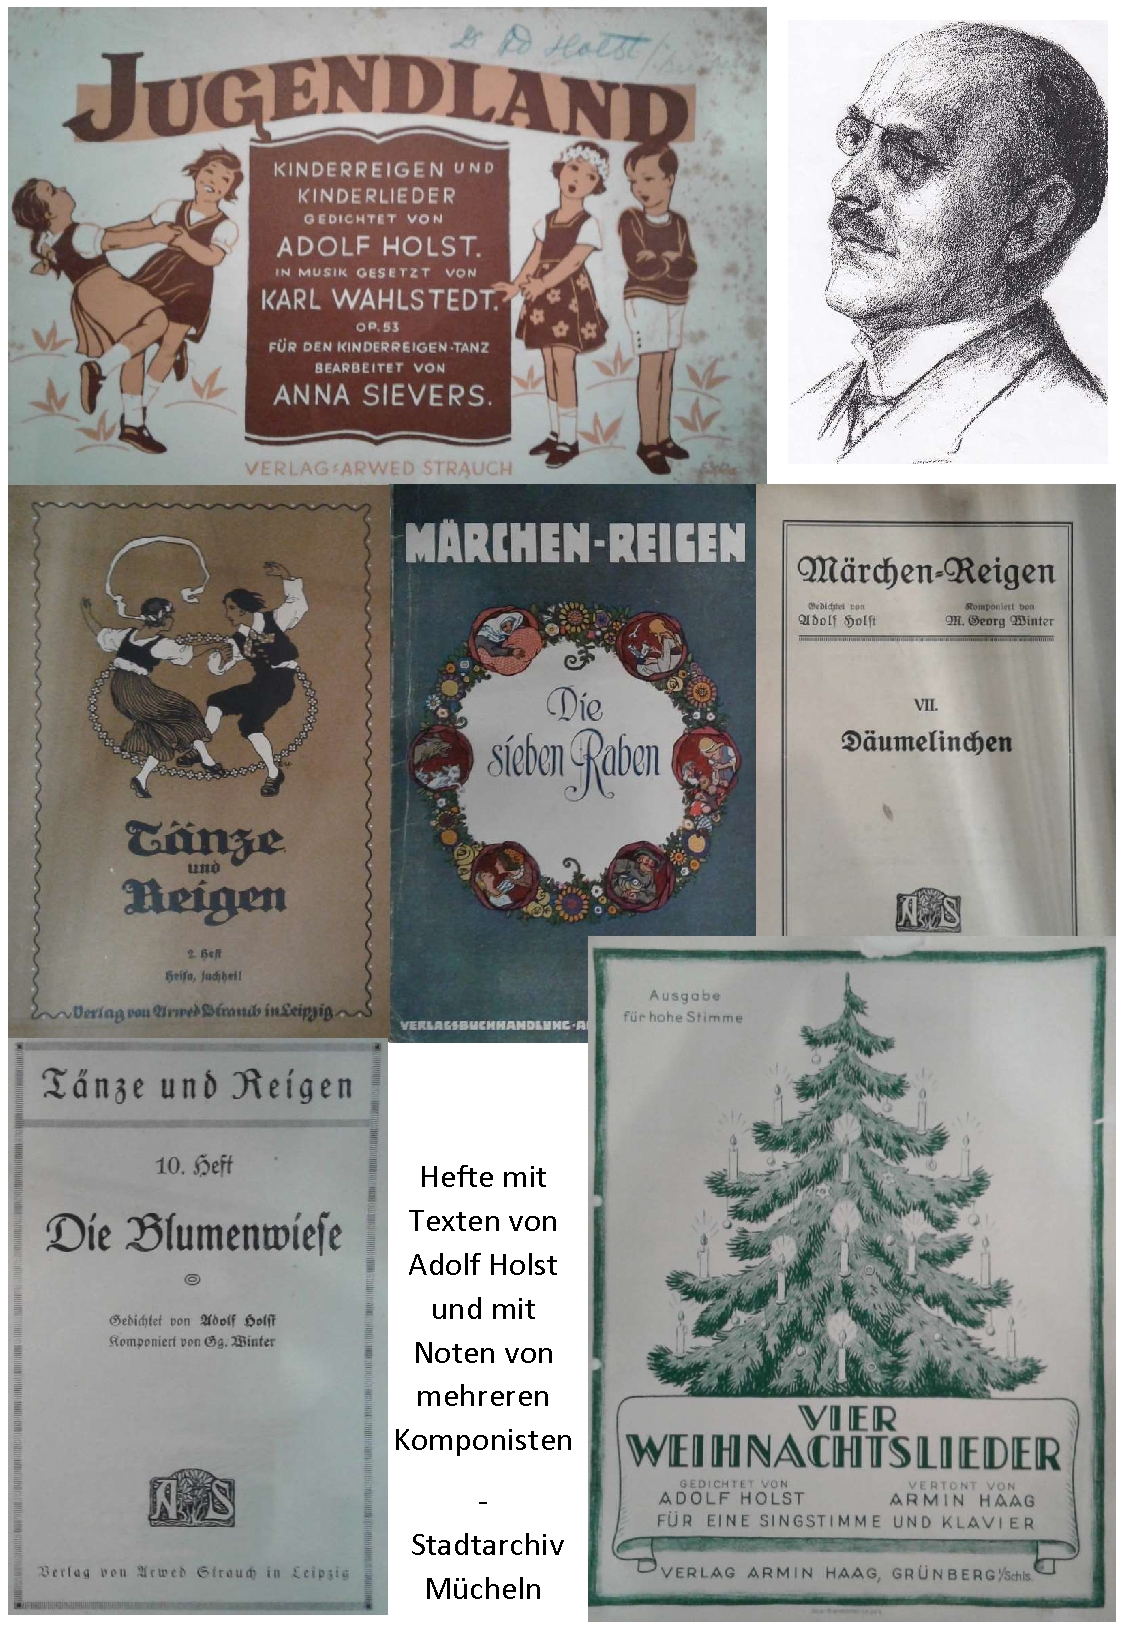 Hefte mit Liedern, Reigen und Tänzen nach Texten von Adolf Holst im Archiv der Stadt Mücheln.